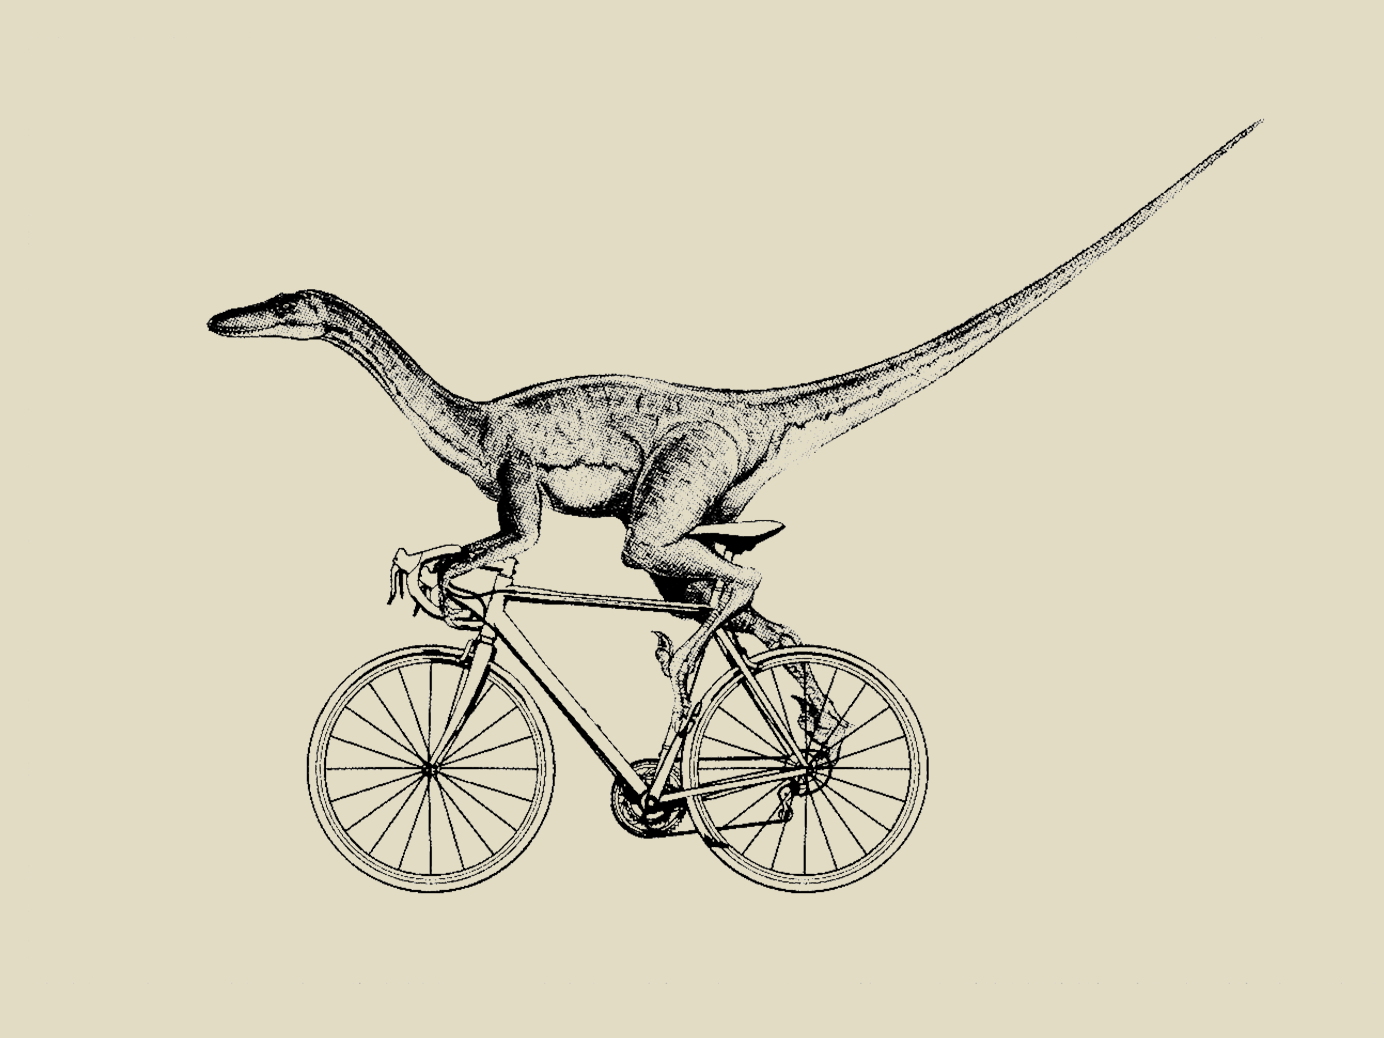 velociraptor bike